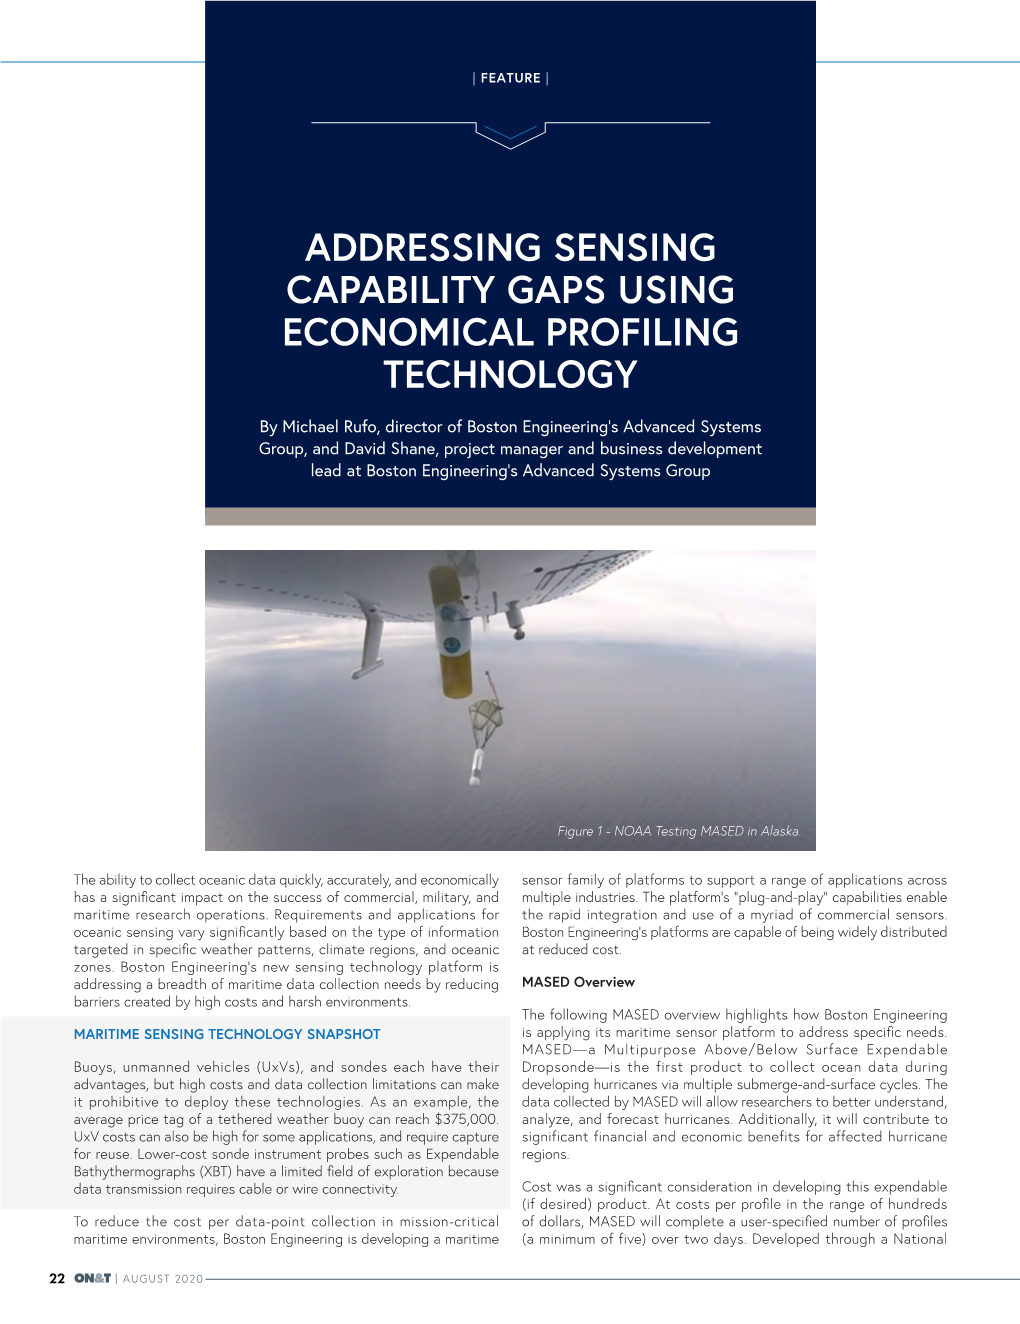 Addressing Sensing Capability Gaps Using Economical Profiling Technology